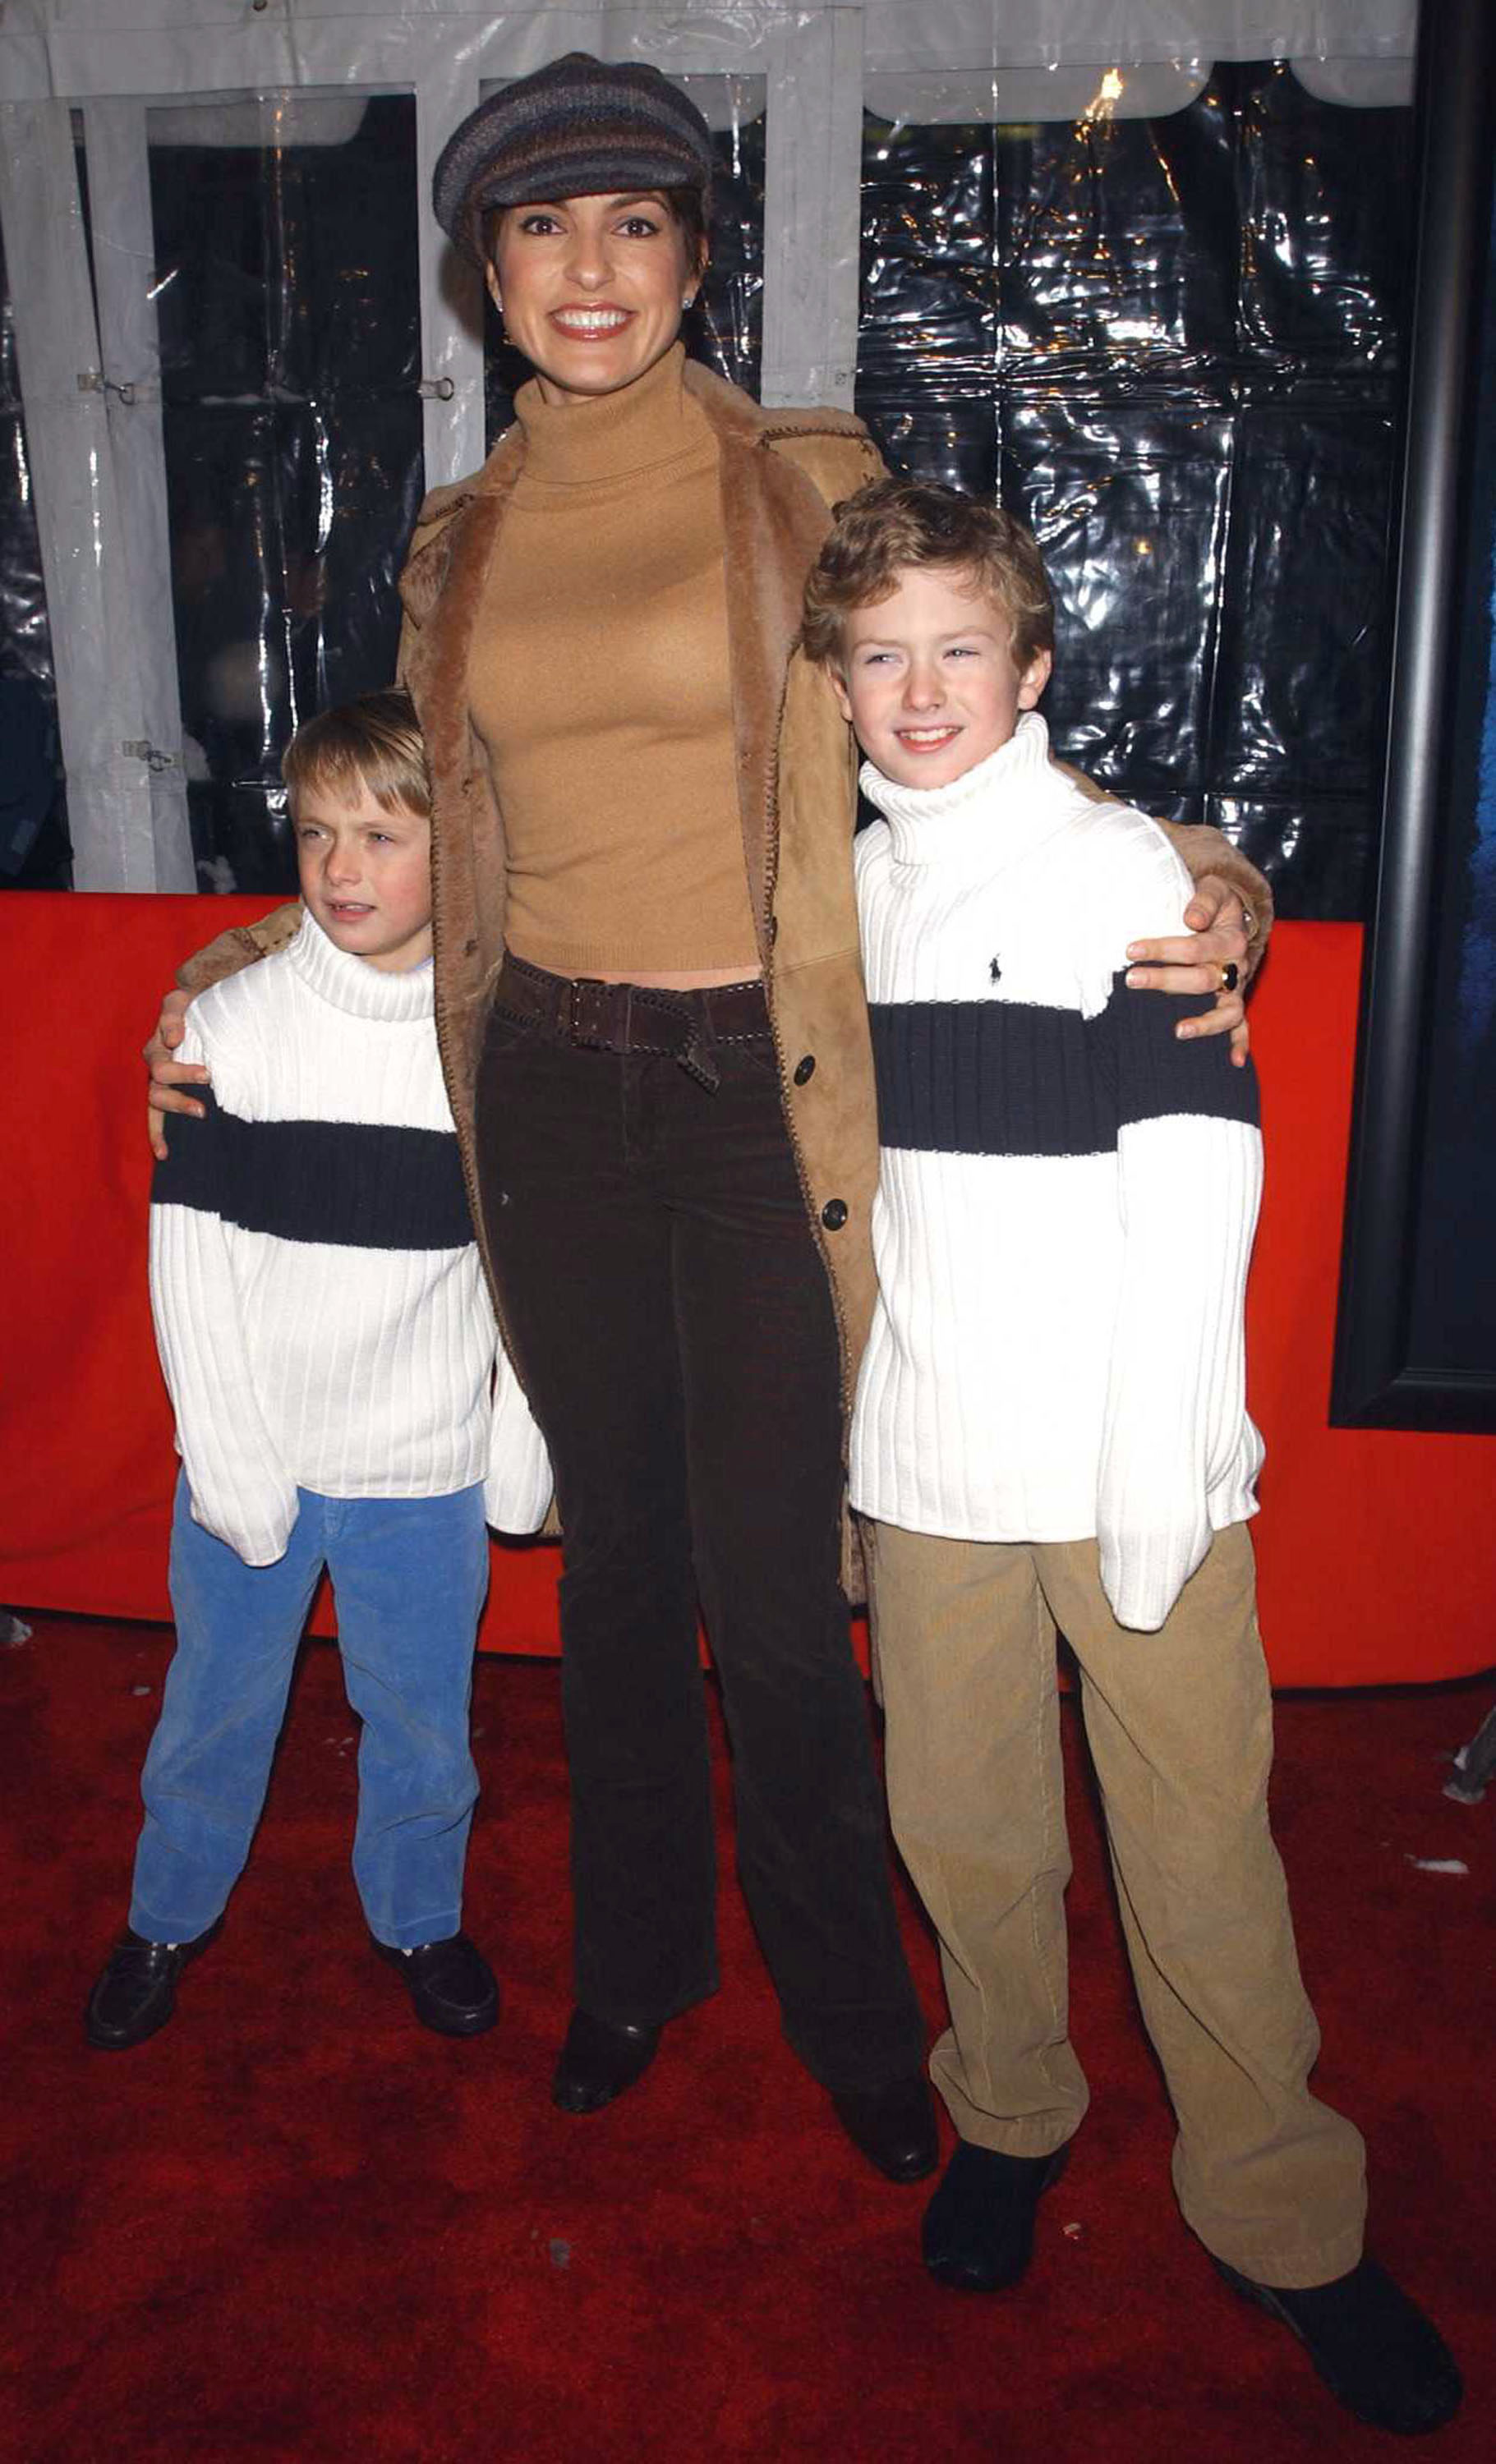 Mariska Hargitay con dos niños no identificados en el estreno de "The Lord of the Rings: The Two Towers" en Nueva York, 2002. | Foto: Getty Images